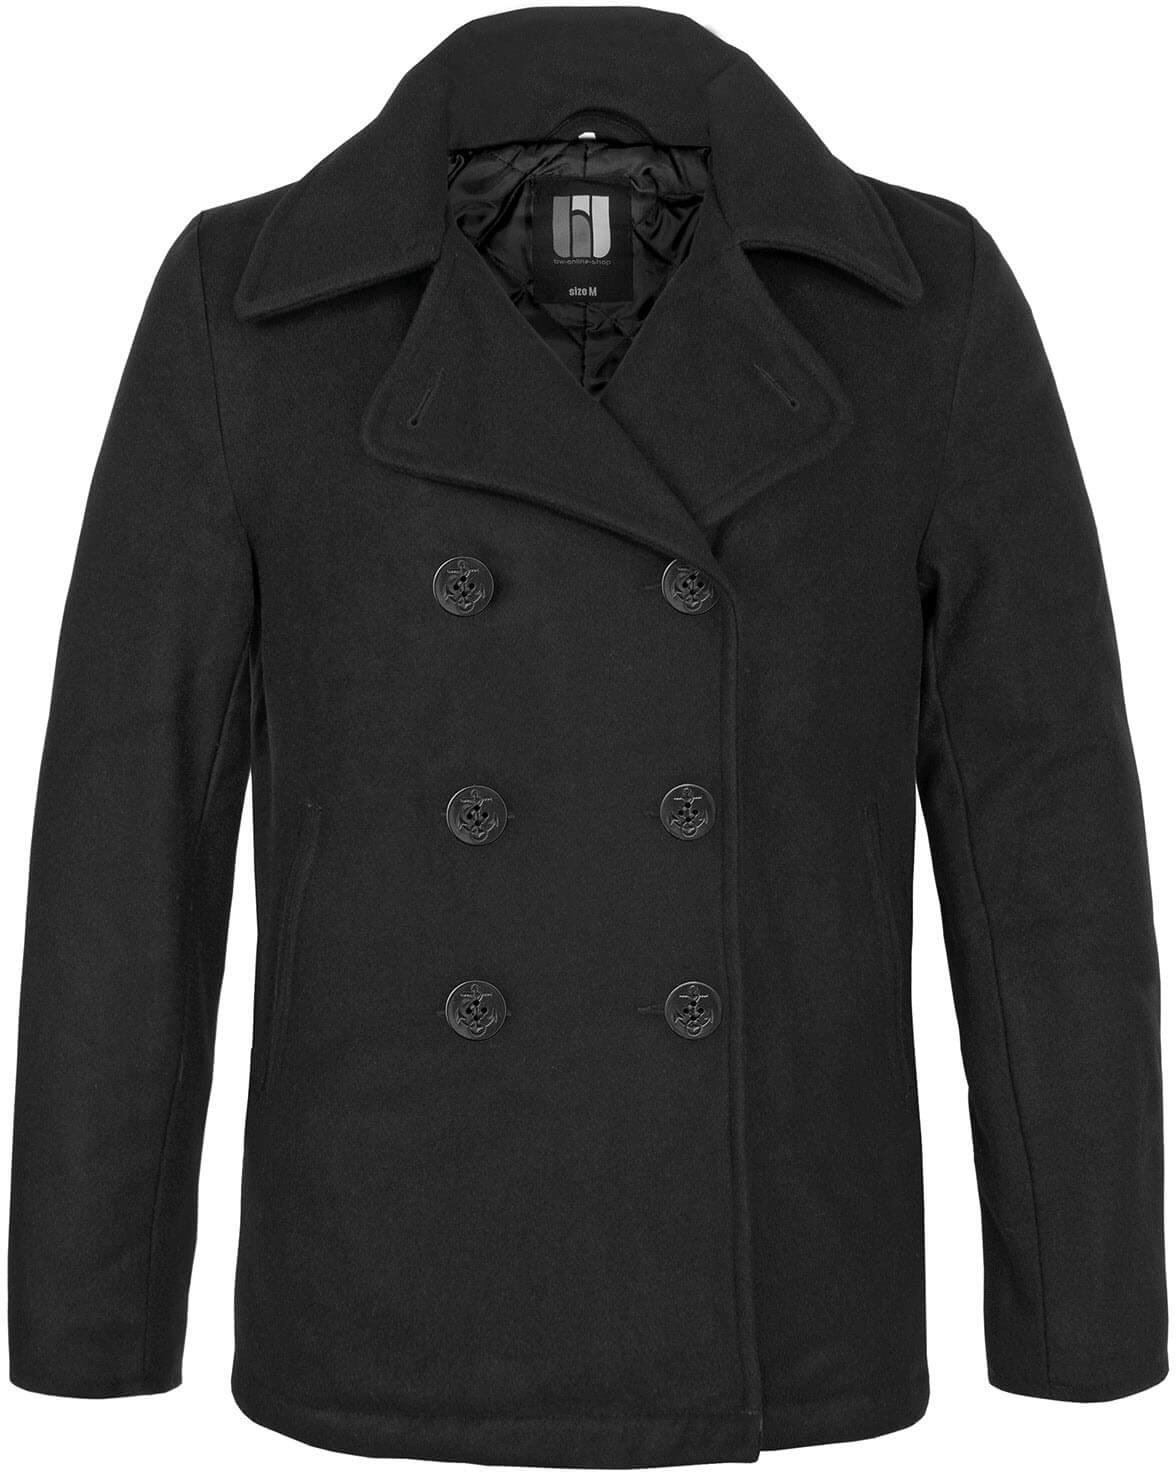 bw-online-shop Navy Pea Coat Mantel schwarz, Größe XL